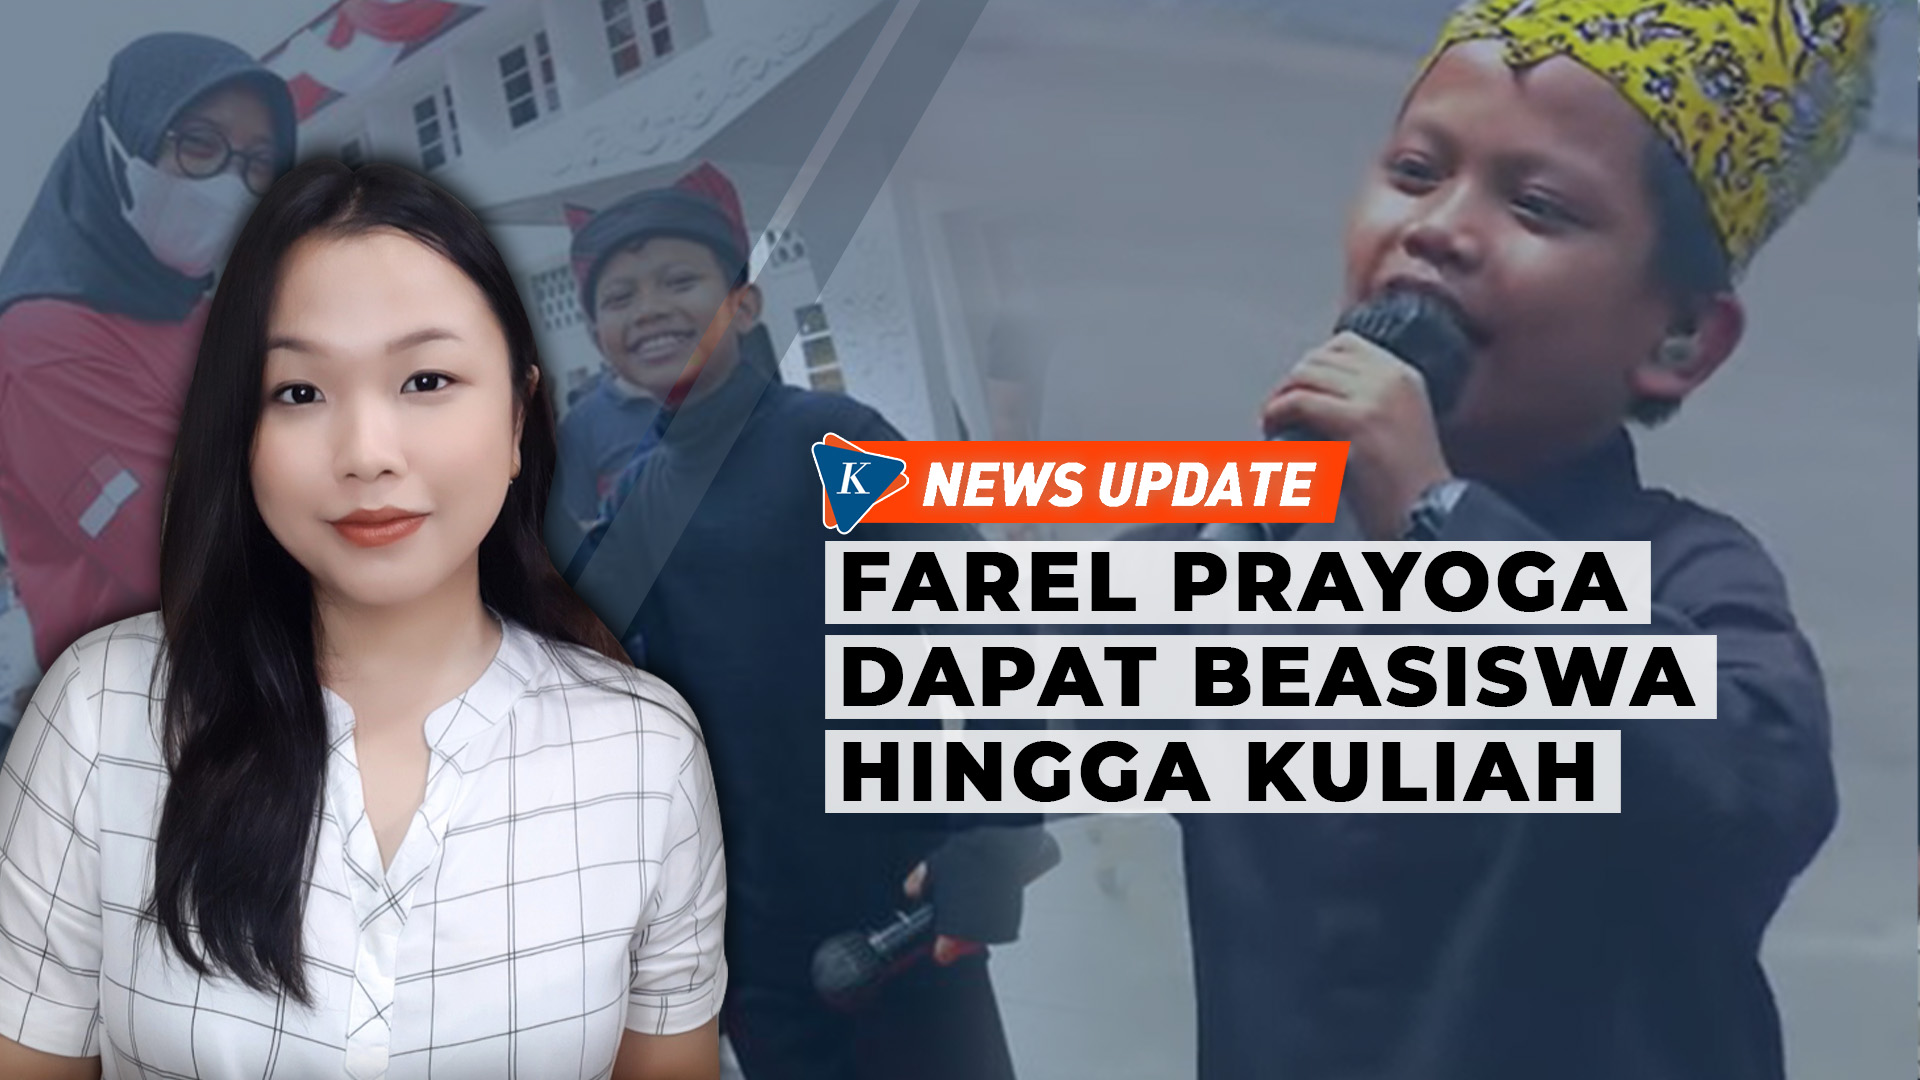 Farel Prayoga Dapat Beasiswa sampai Kuliah hingga Dikontrak Label Musik…